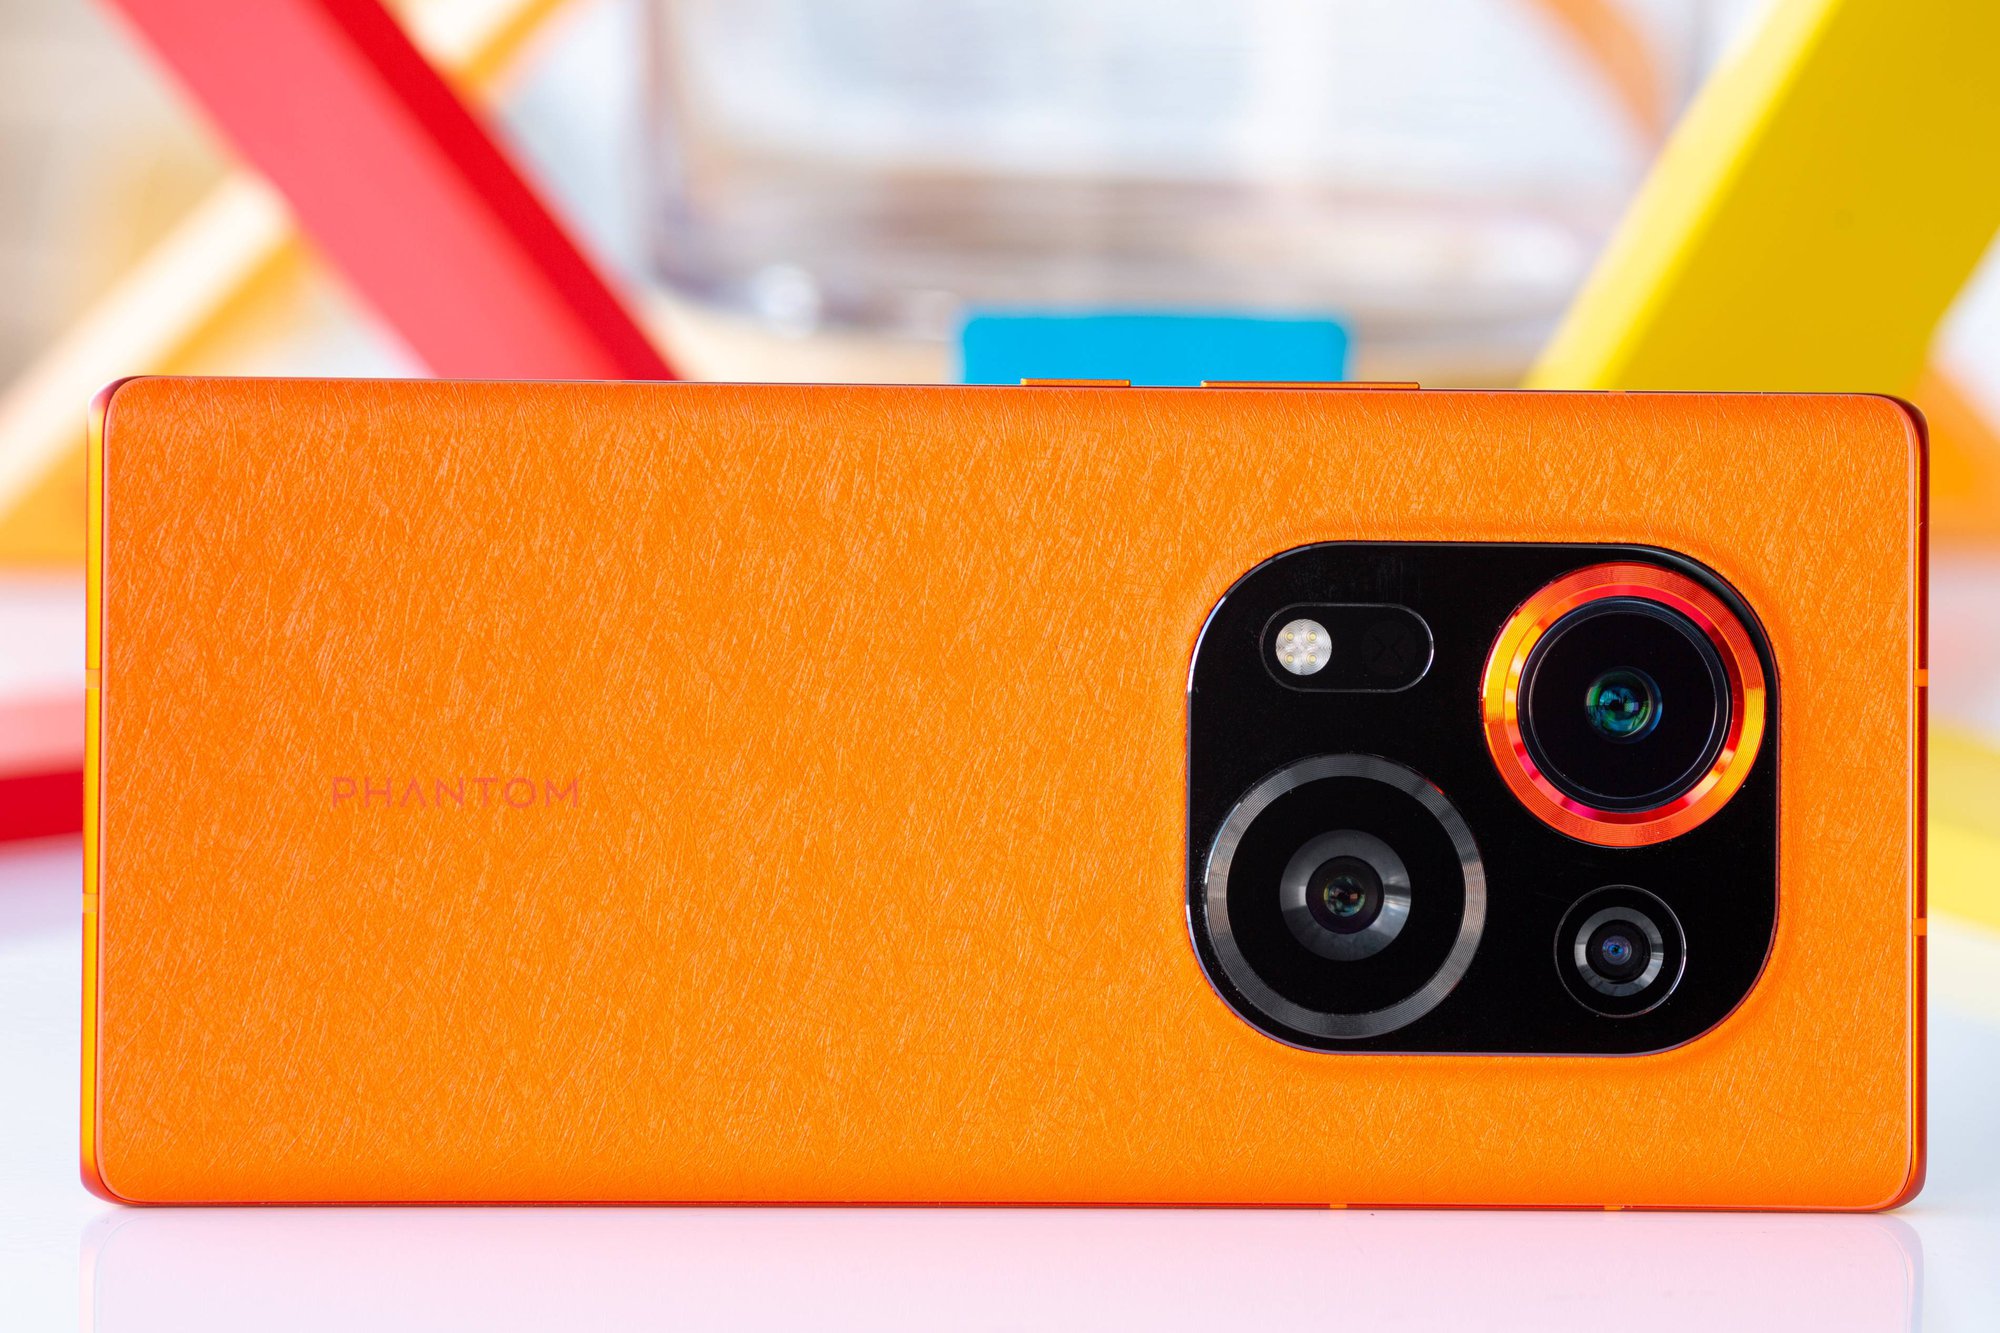 Tecno ra mắt điện thoại cao cấp có camera độc lạ - Ảnh 1.